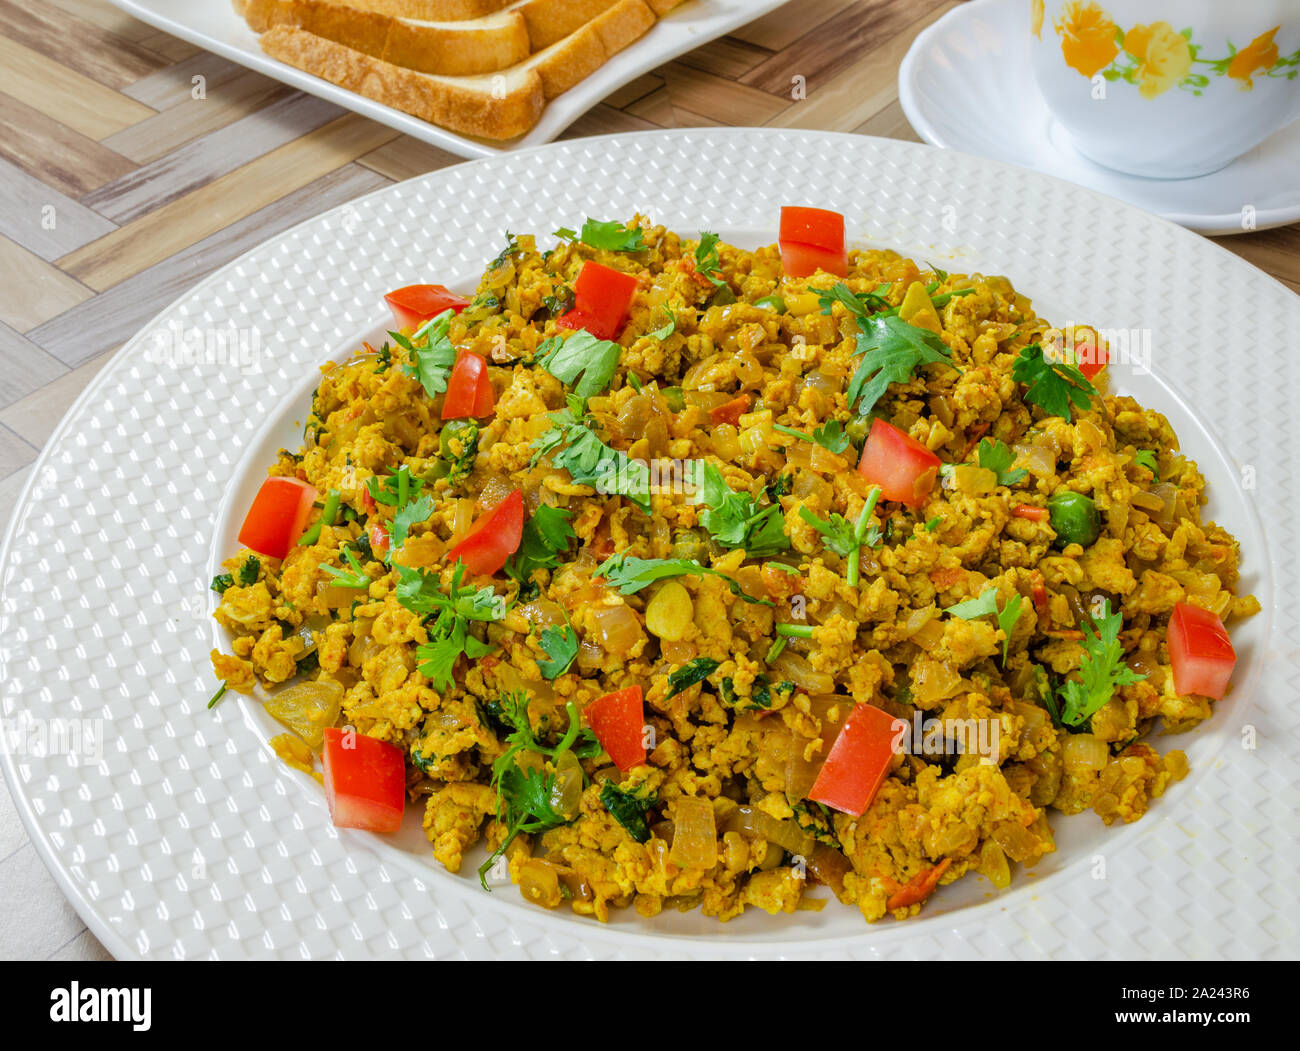 Würzig & bunte Version von Rührei. Indische Küche. Stockfoto